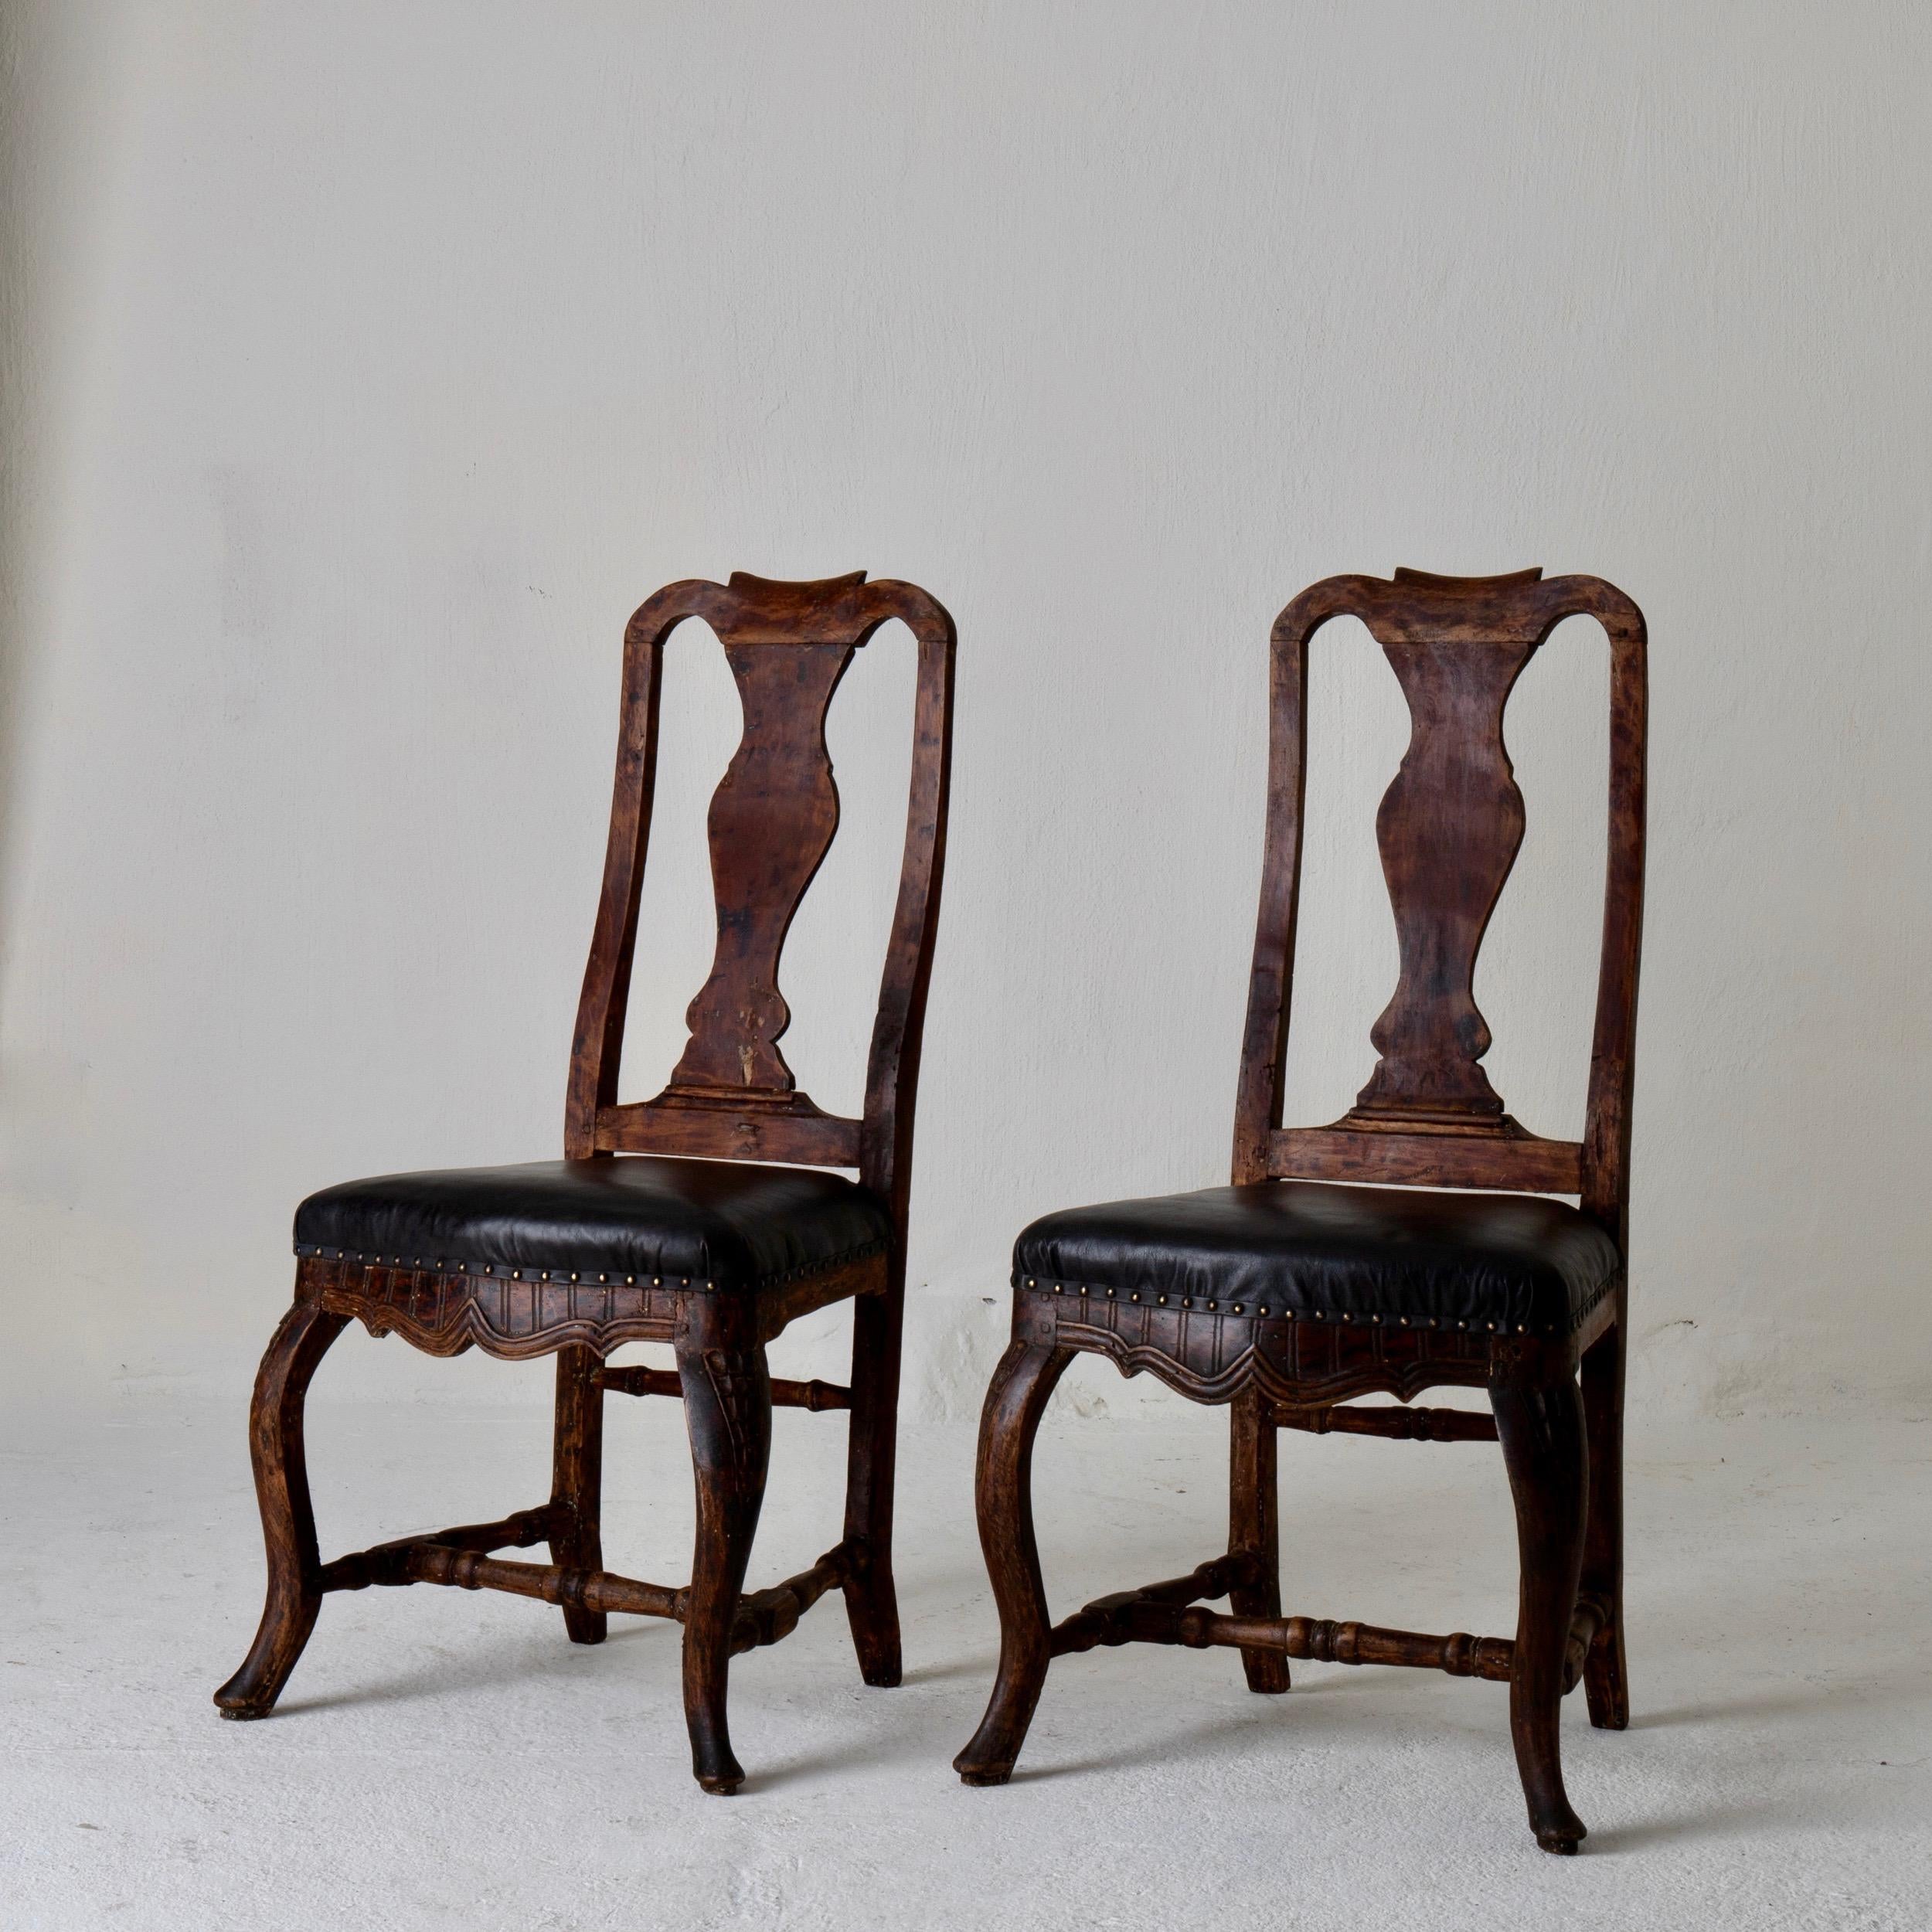 Stühle Paar schwedischen Barock braun schwarz Schweden. Ein Paar Beistellstühle aus der Barockzeit in Schweden. Ein dunkelbrauner Rahmen mit diskreten Schnitzereien. Der Sitz ist mit weichem schwarzem Leder gepolstert und mit Messingnägeln